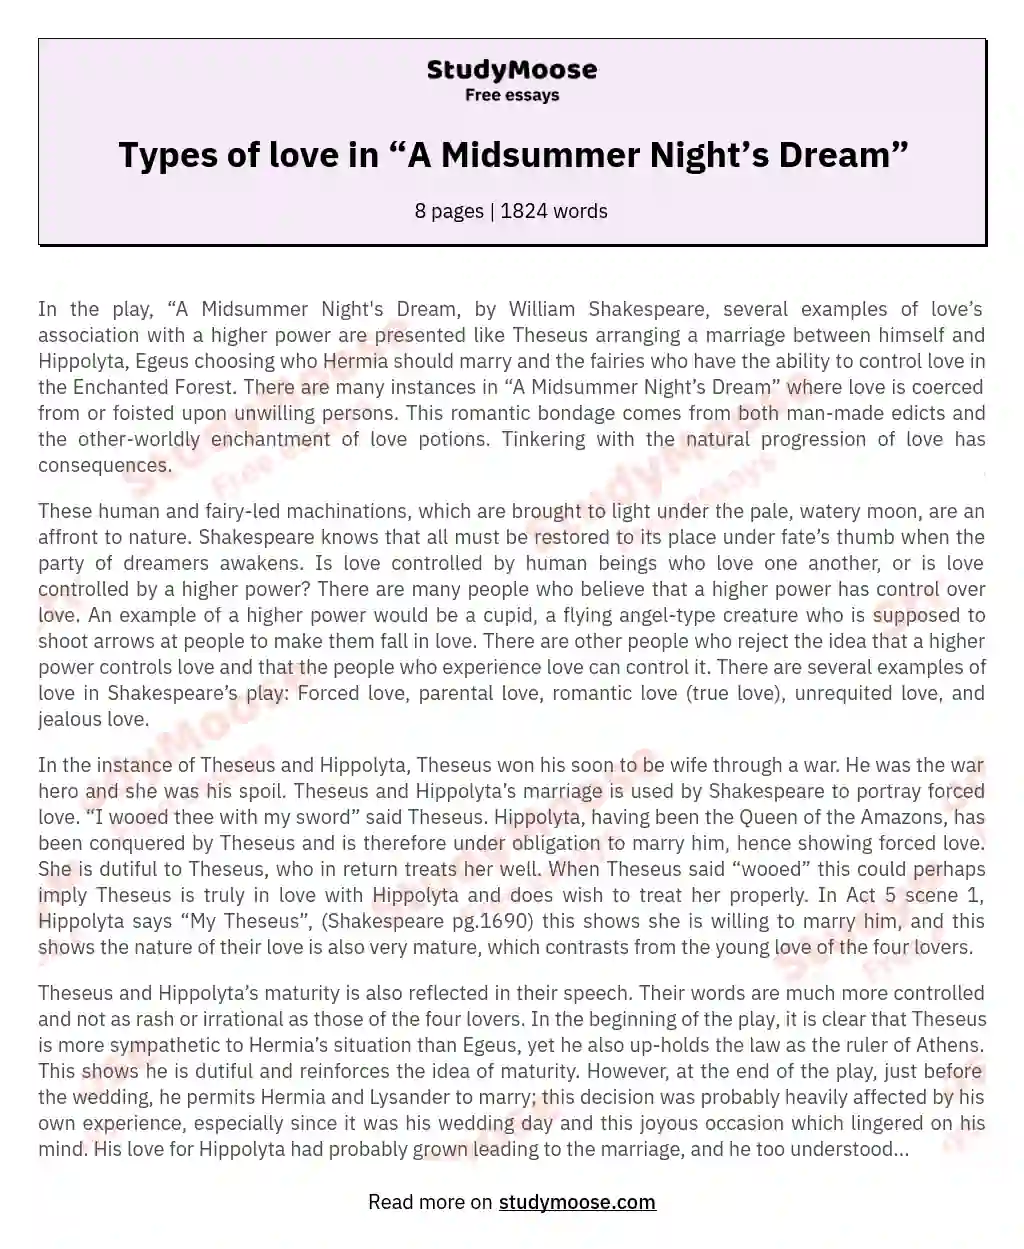 Types of love in “A Midsummer Night’s Dream” essay